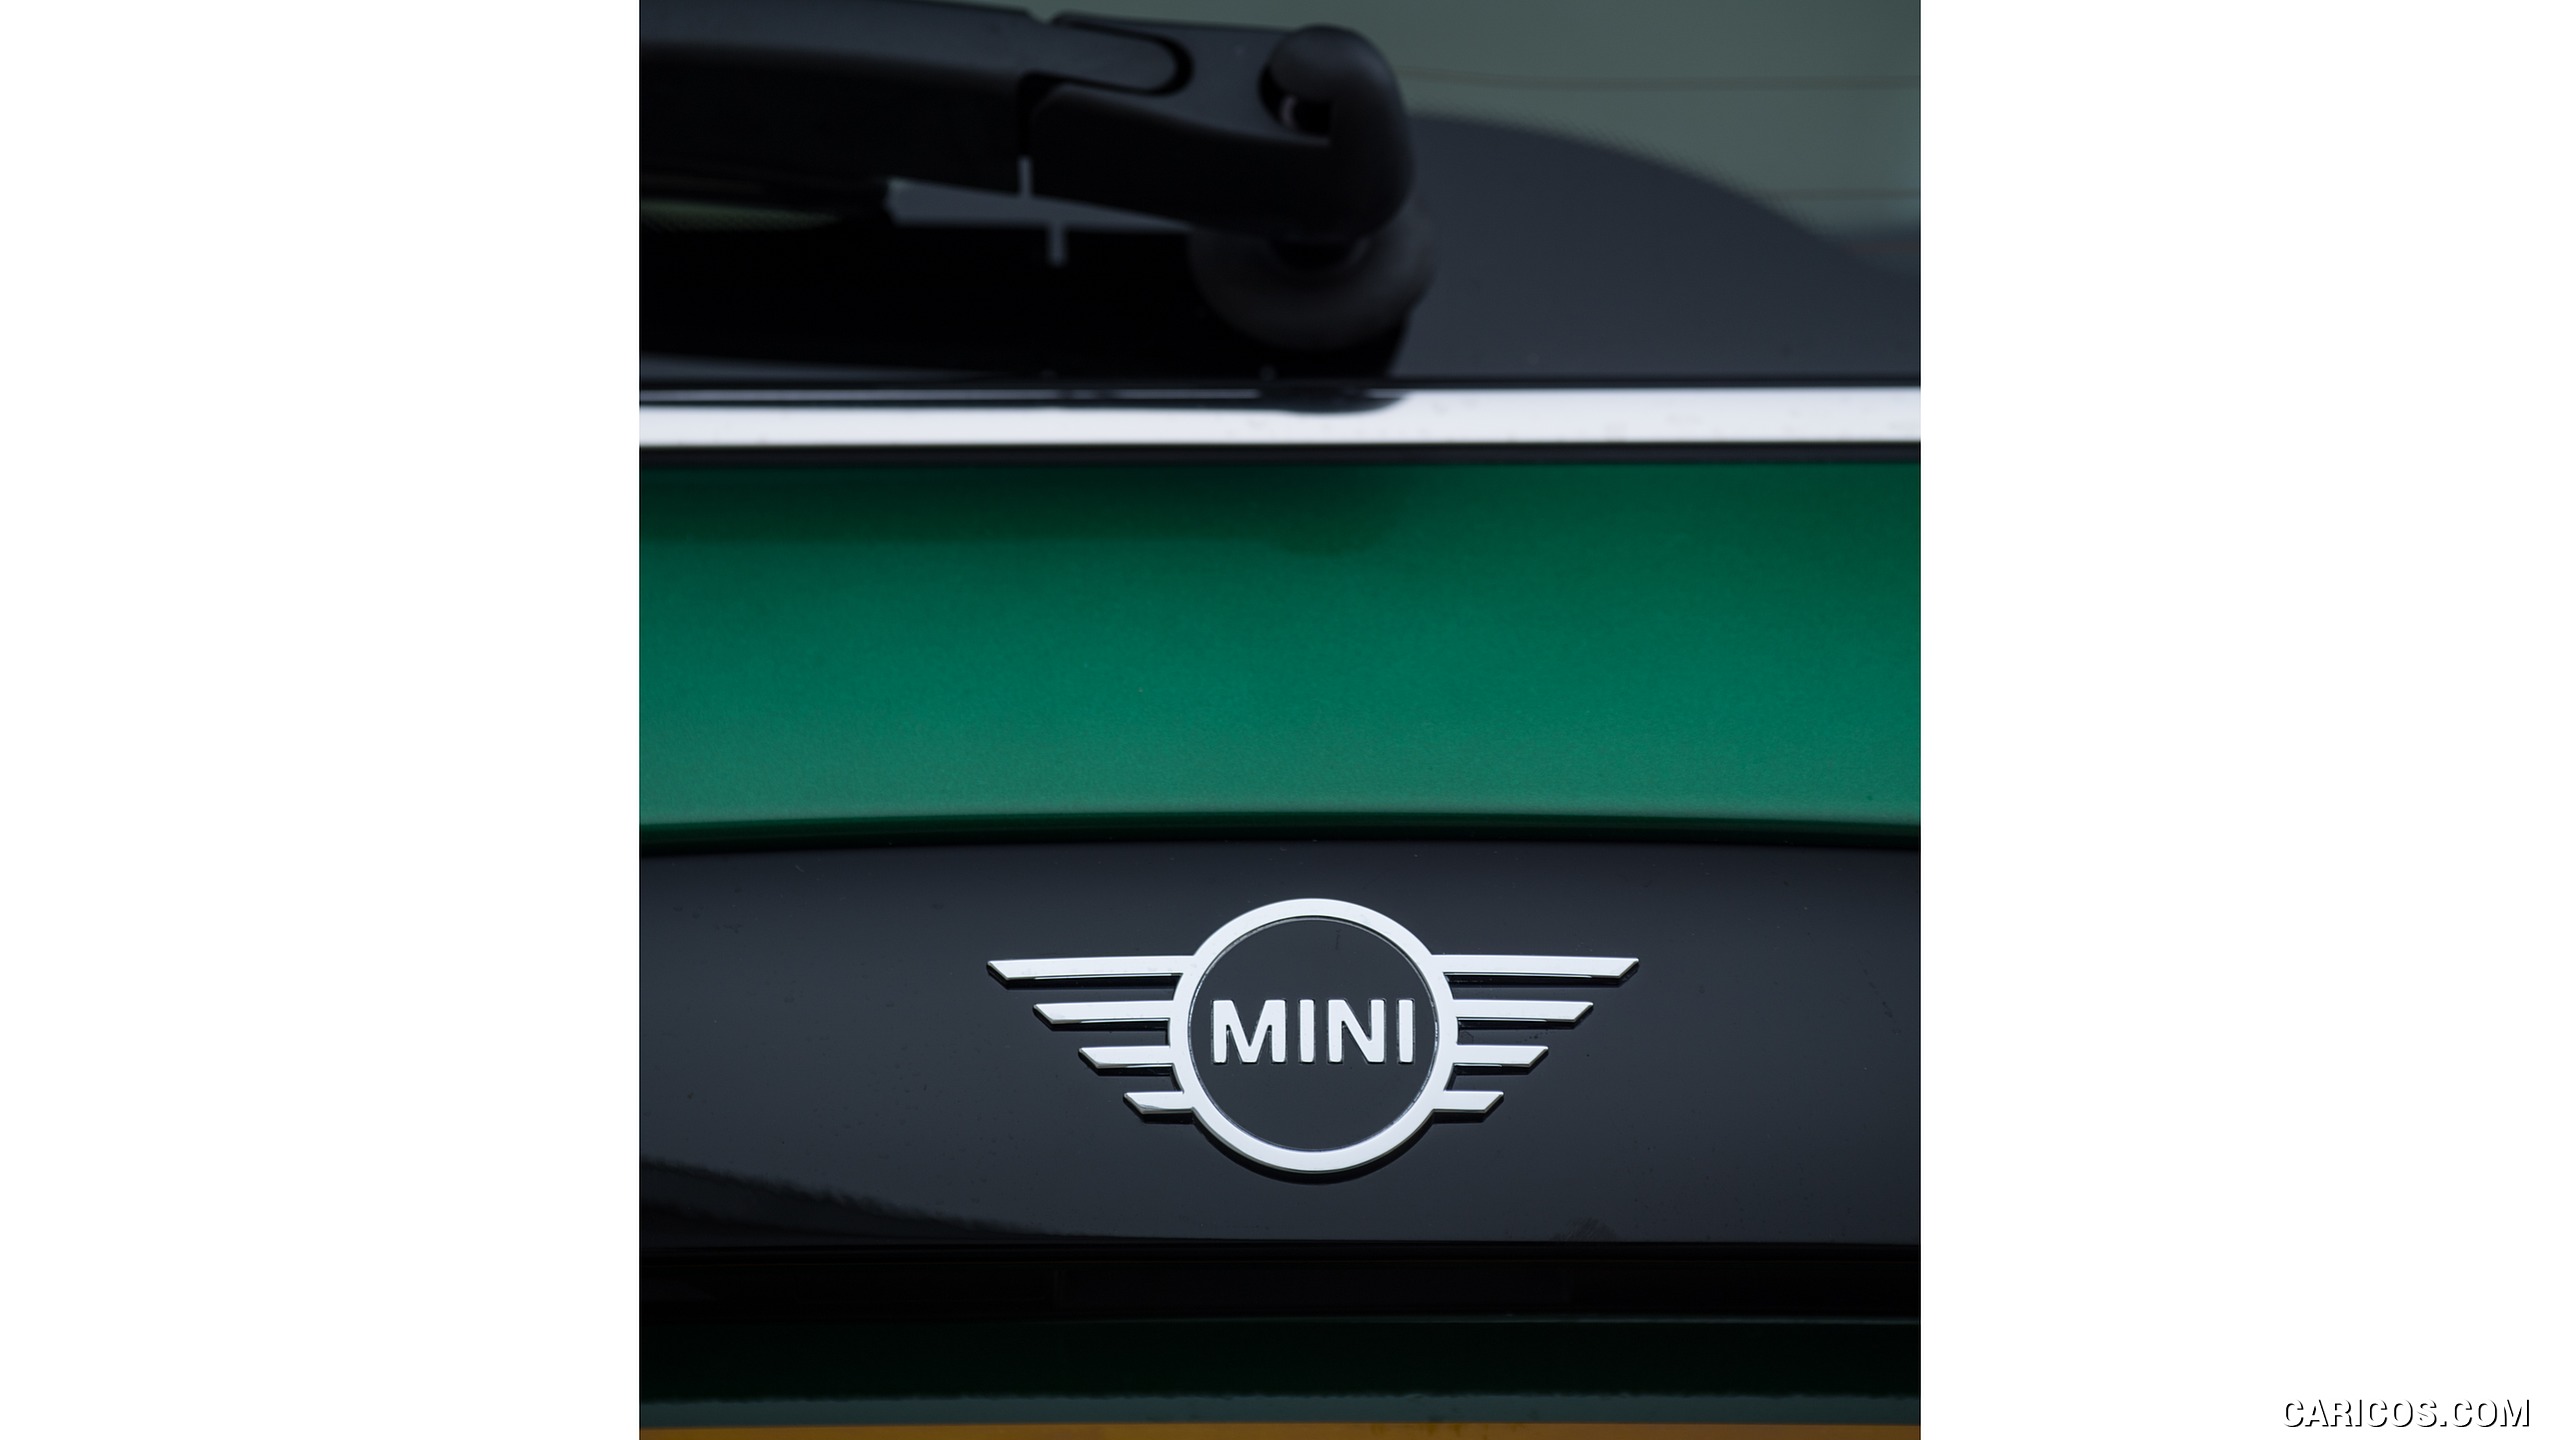 2019 MINI Cooper 3-Door 60 Years Edition - Badge, #69 of 102